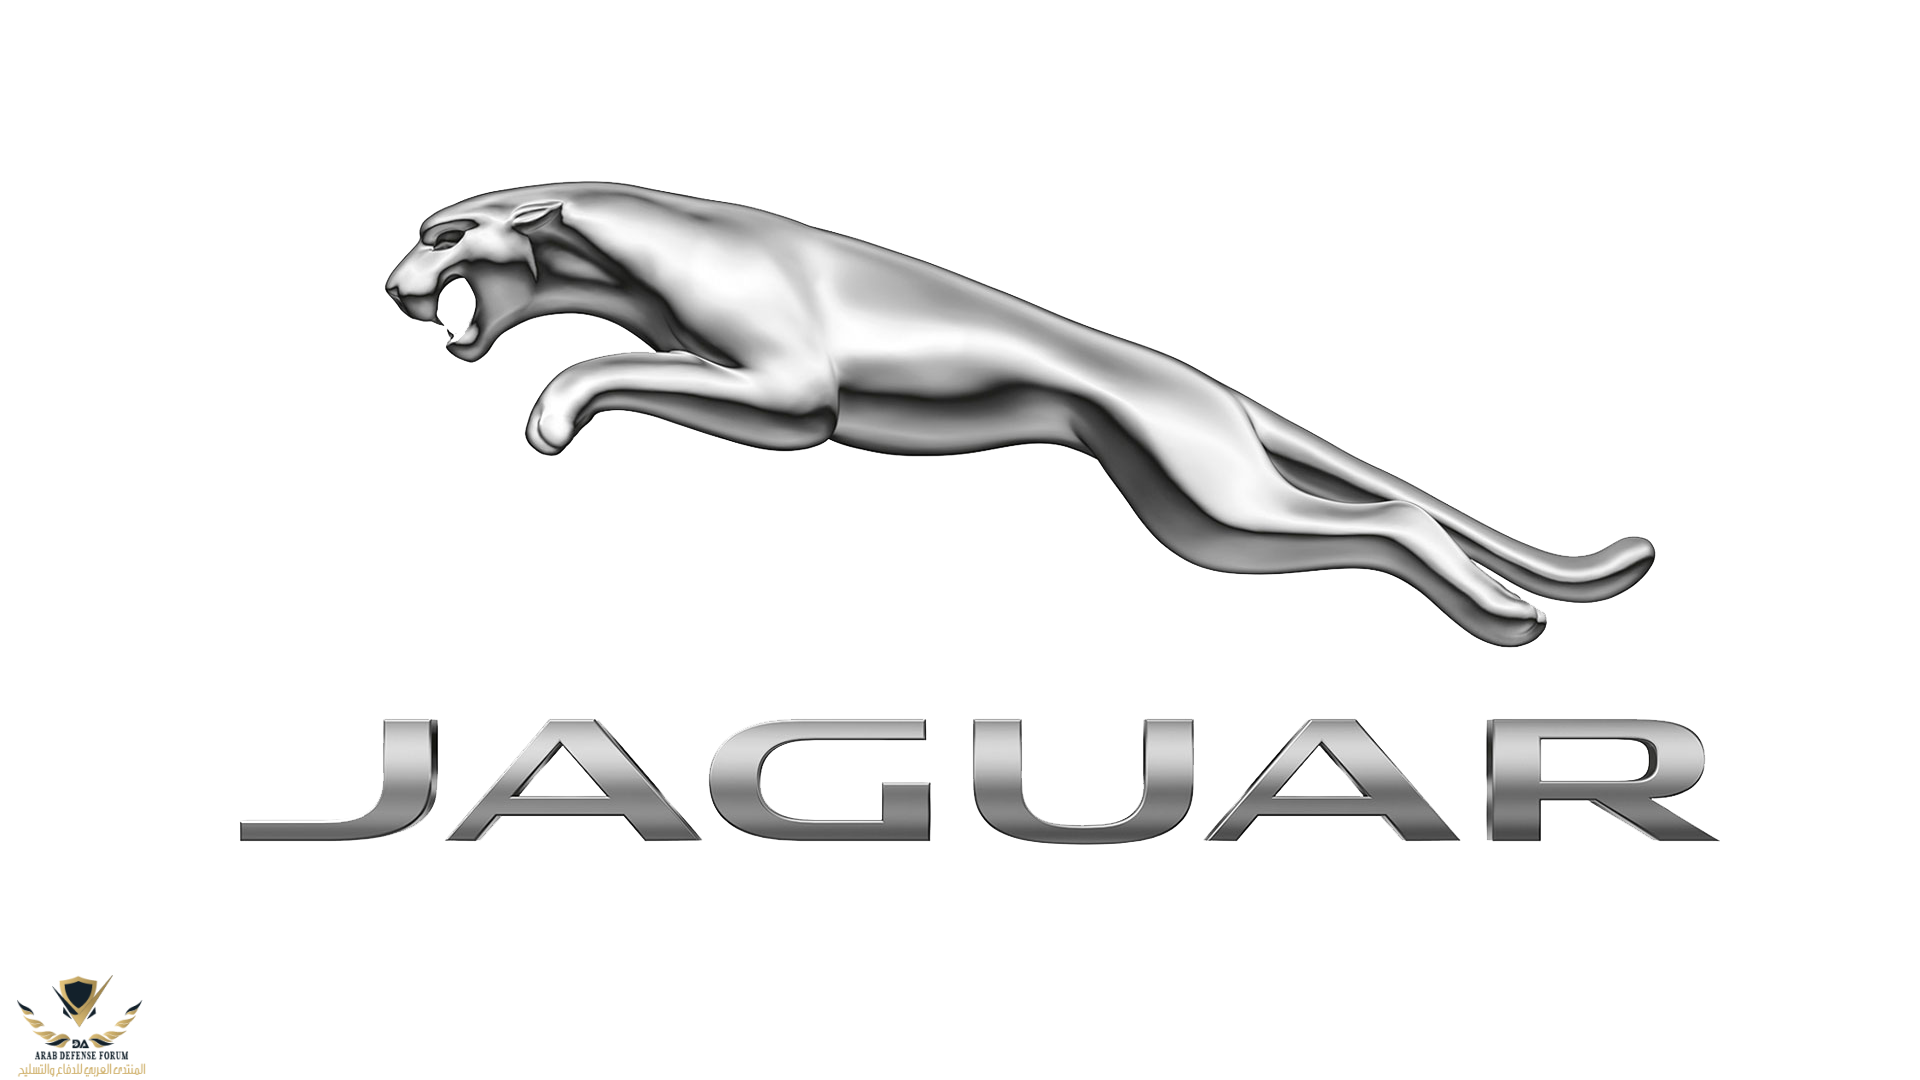 Jaguar-logo-2012-1920x1080.png